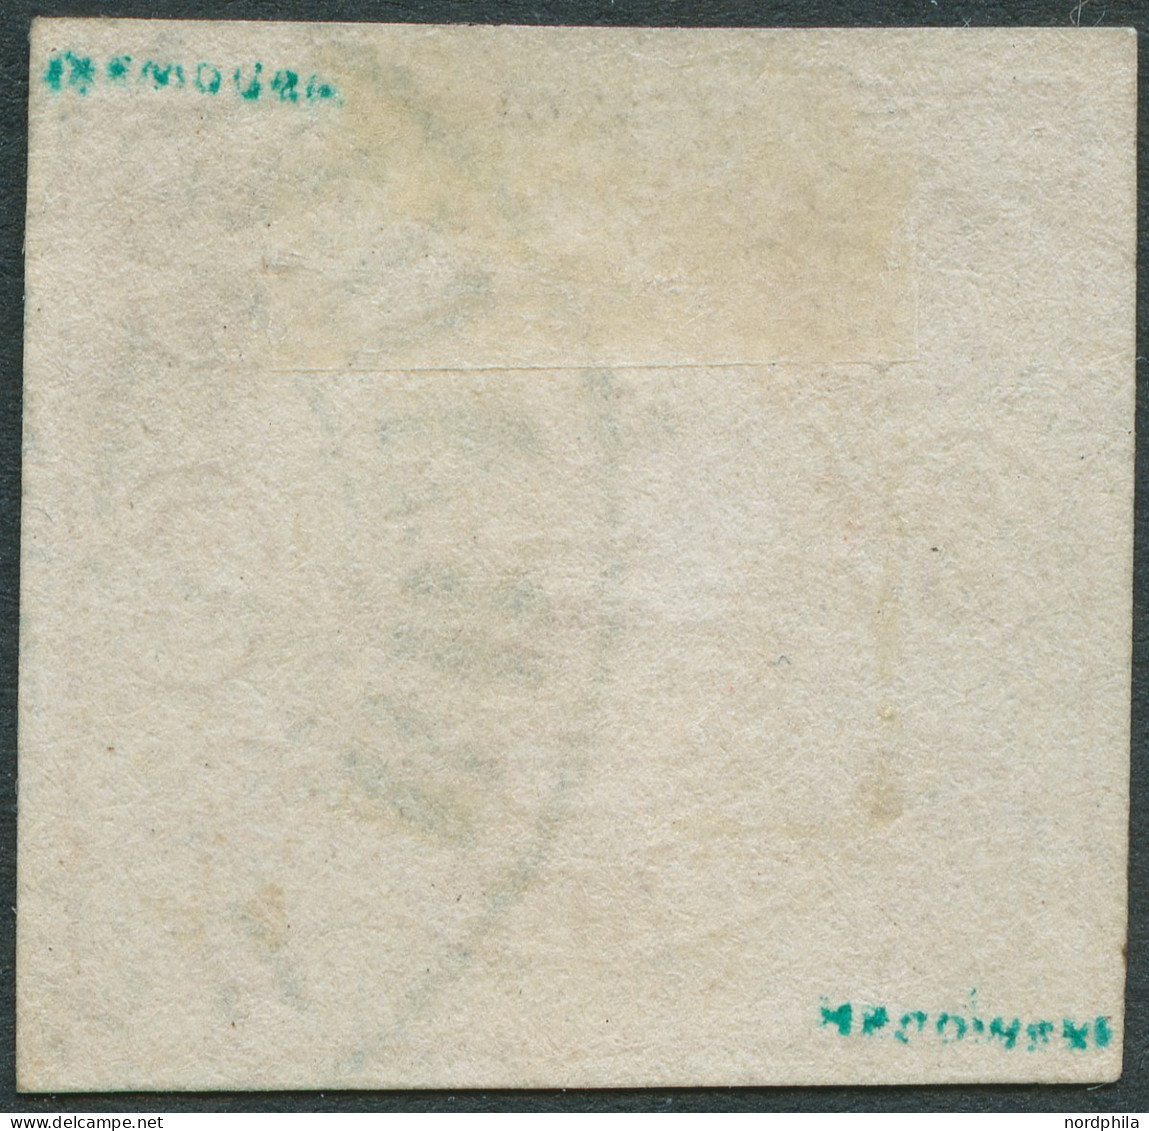 BRAUNSCHWEIG 3 O, 1852, 3 Sgr. Orangerot, Blauer K2 Von Braunschweig, Vollrandig, Pracht, Signiert, Mi. 350,- - Brunswick